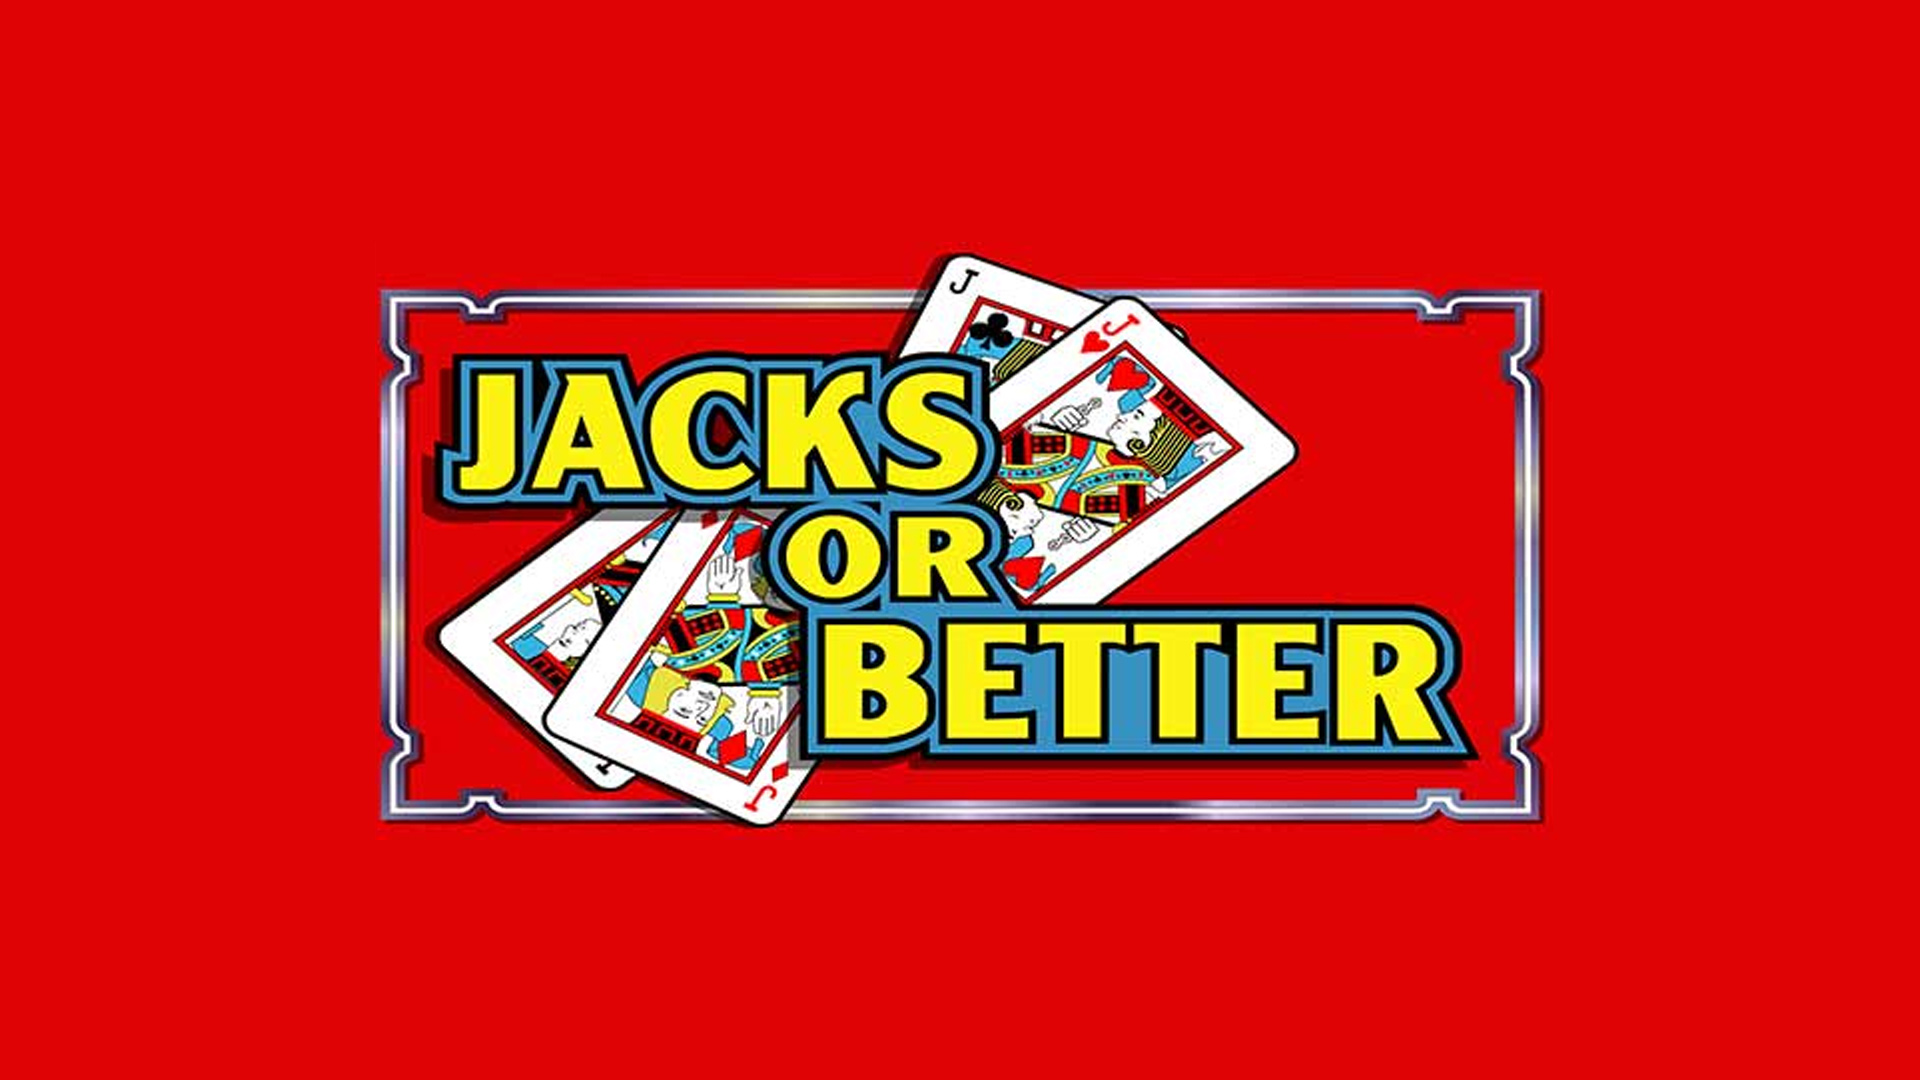 Jacks-or-Better-Video-Poker-belly-glass-design_q085_1920x1080